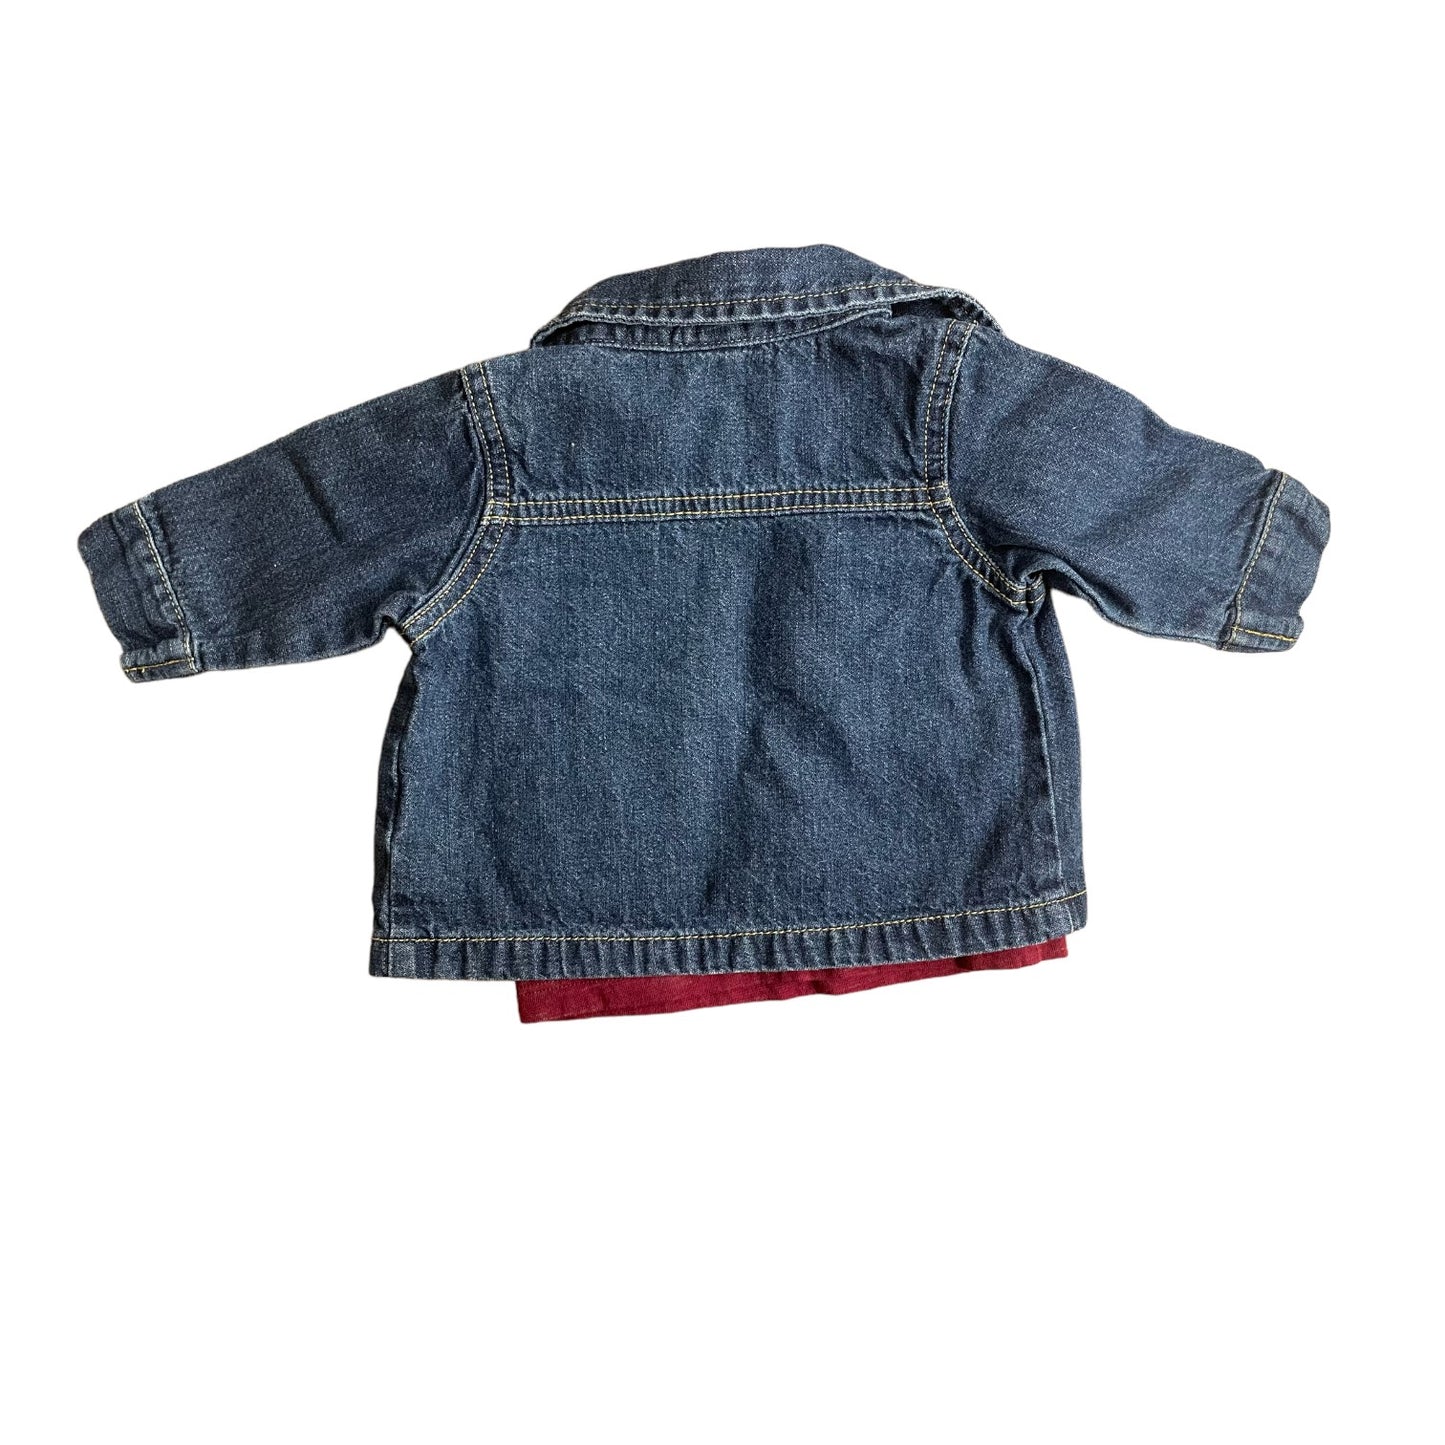 Carter's Denim Jacket Infant Boys Size 3 Months